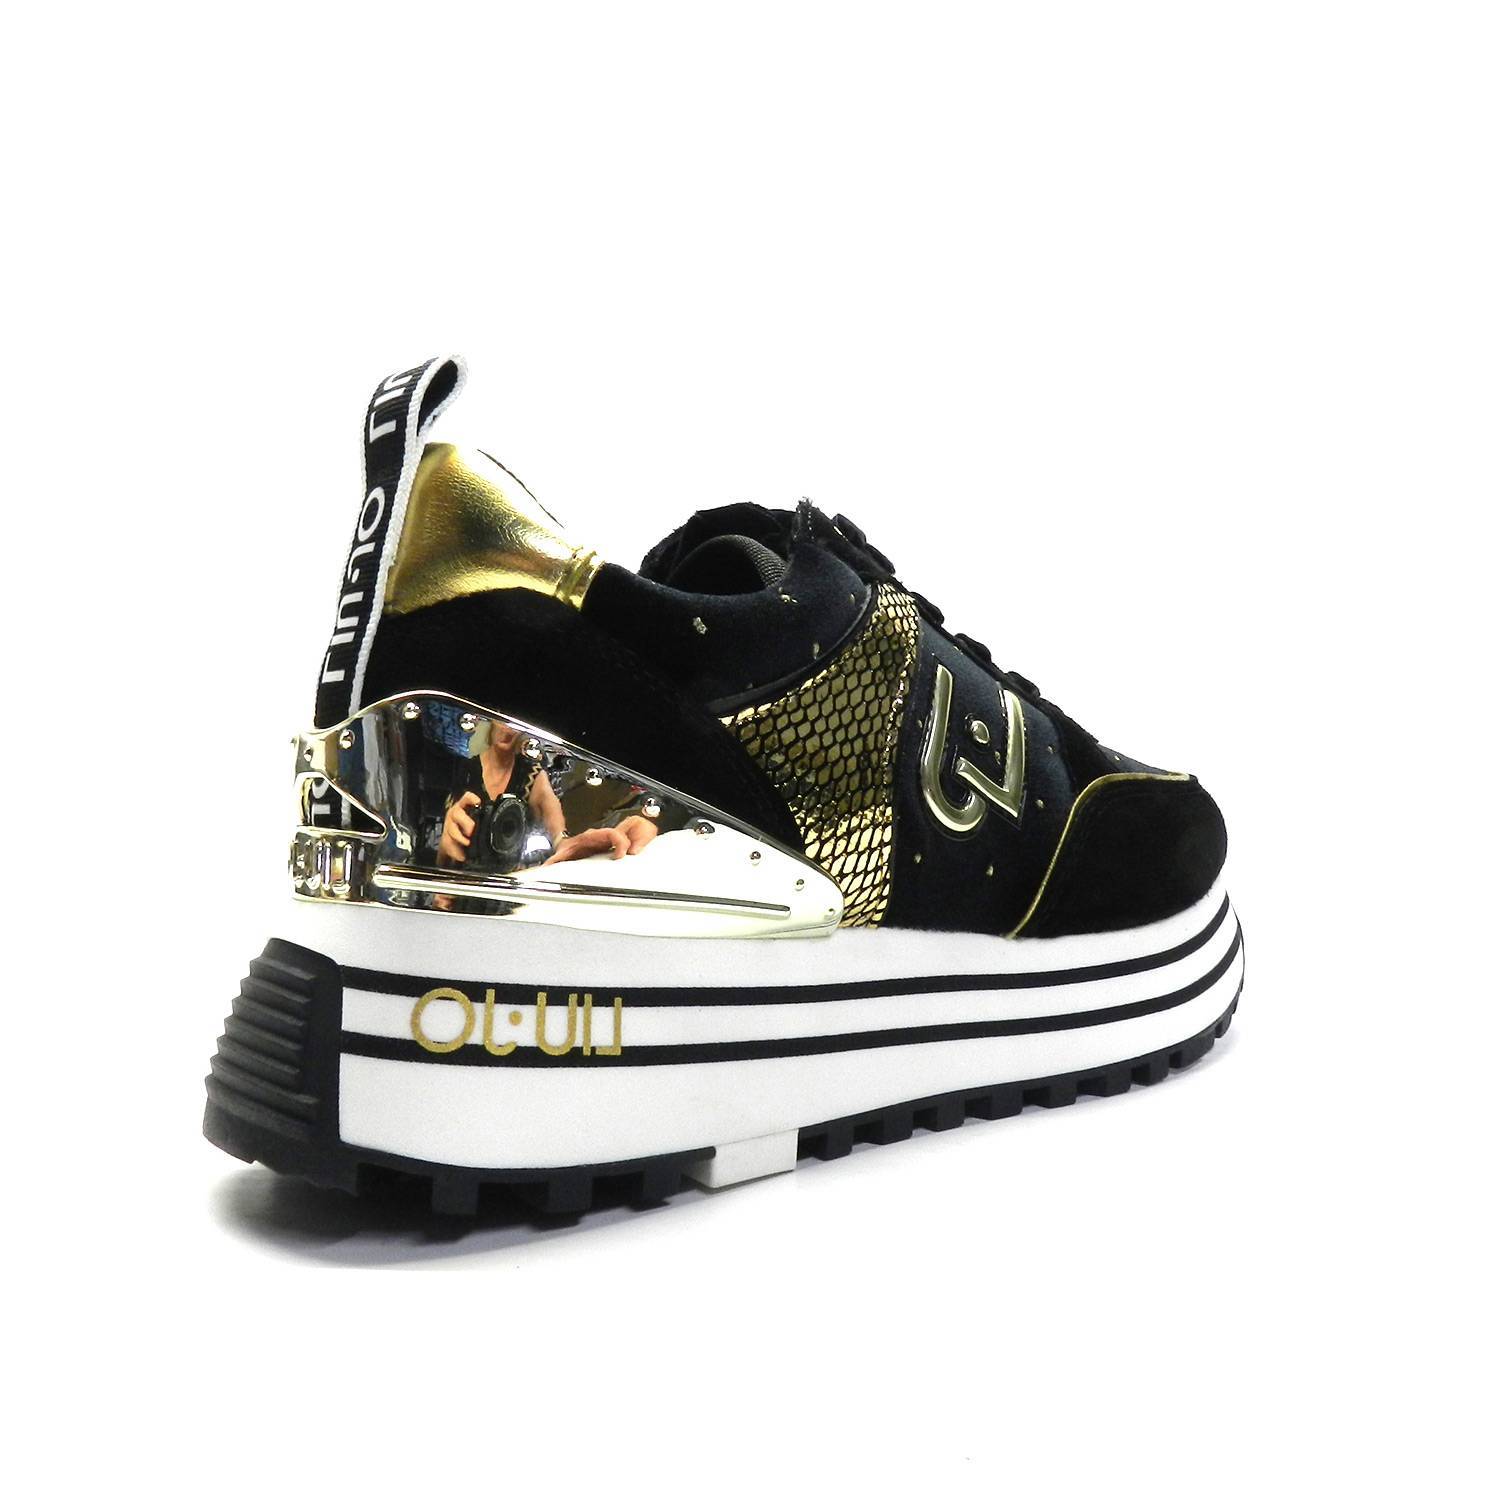 Zapatillas de la marca LiuJo, modelo Maxi Wonder en color negro. Zapatillas deportivas de color negro y dorado que combina varias texturas, con suela de plataforma con rayas. Altura de la suela: 4cm.